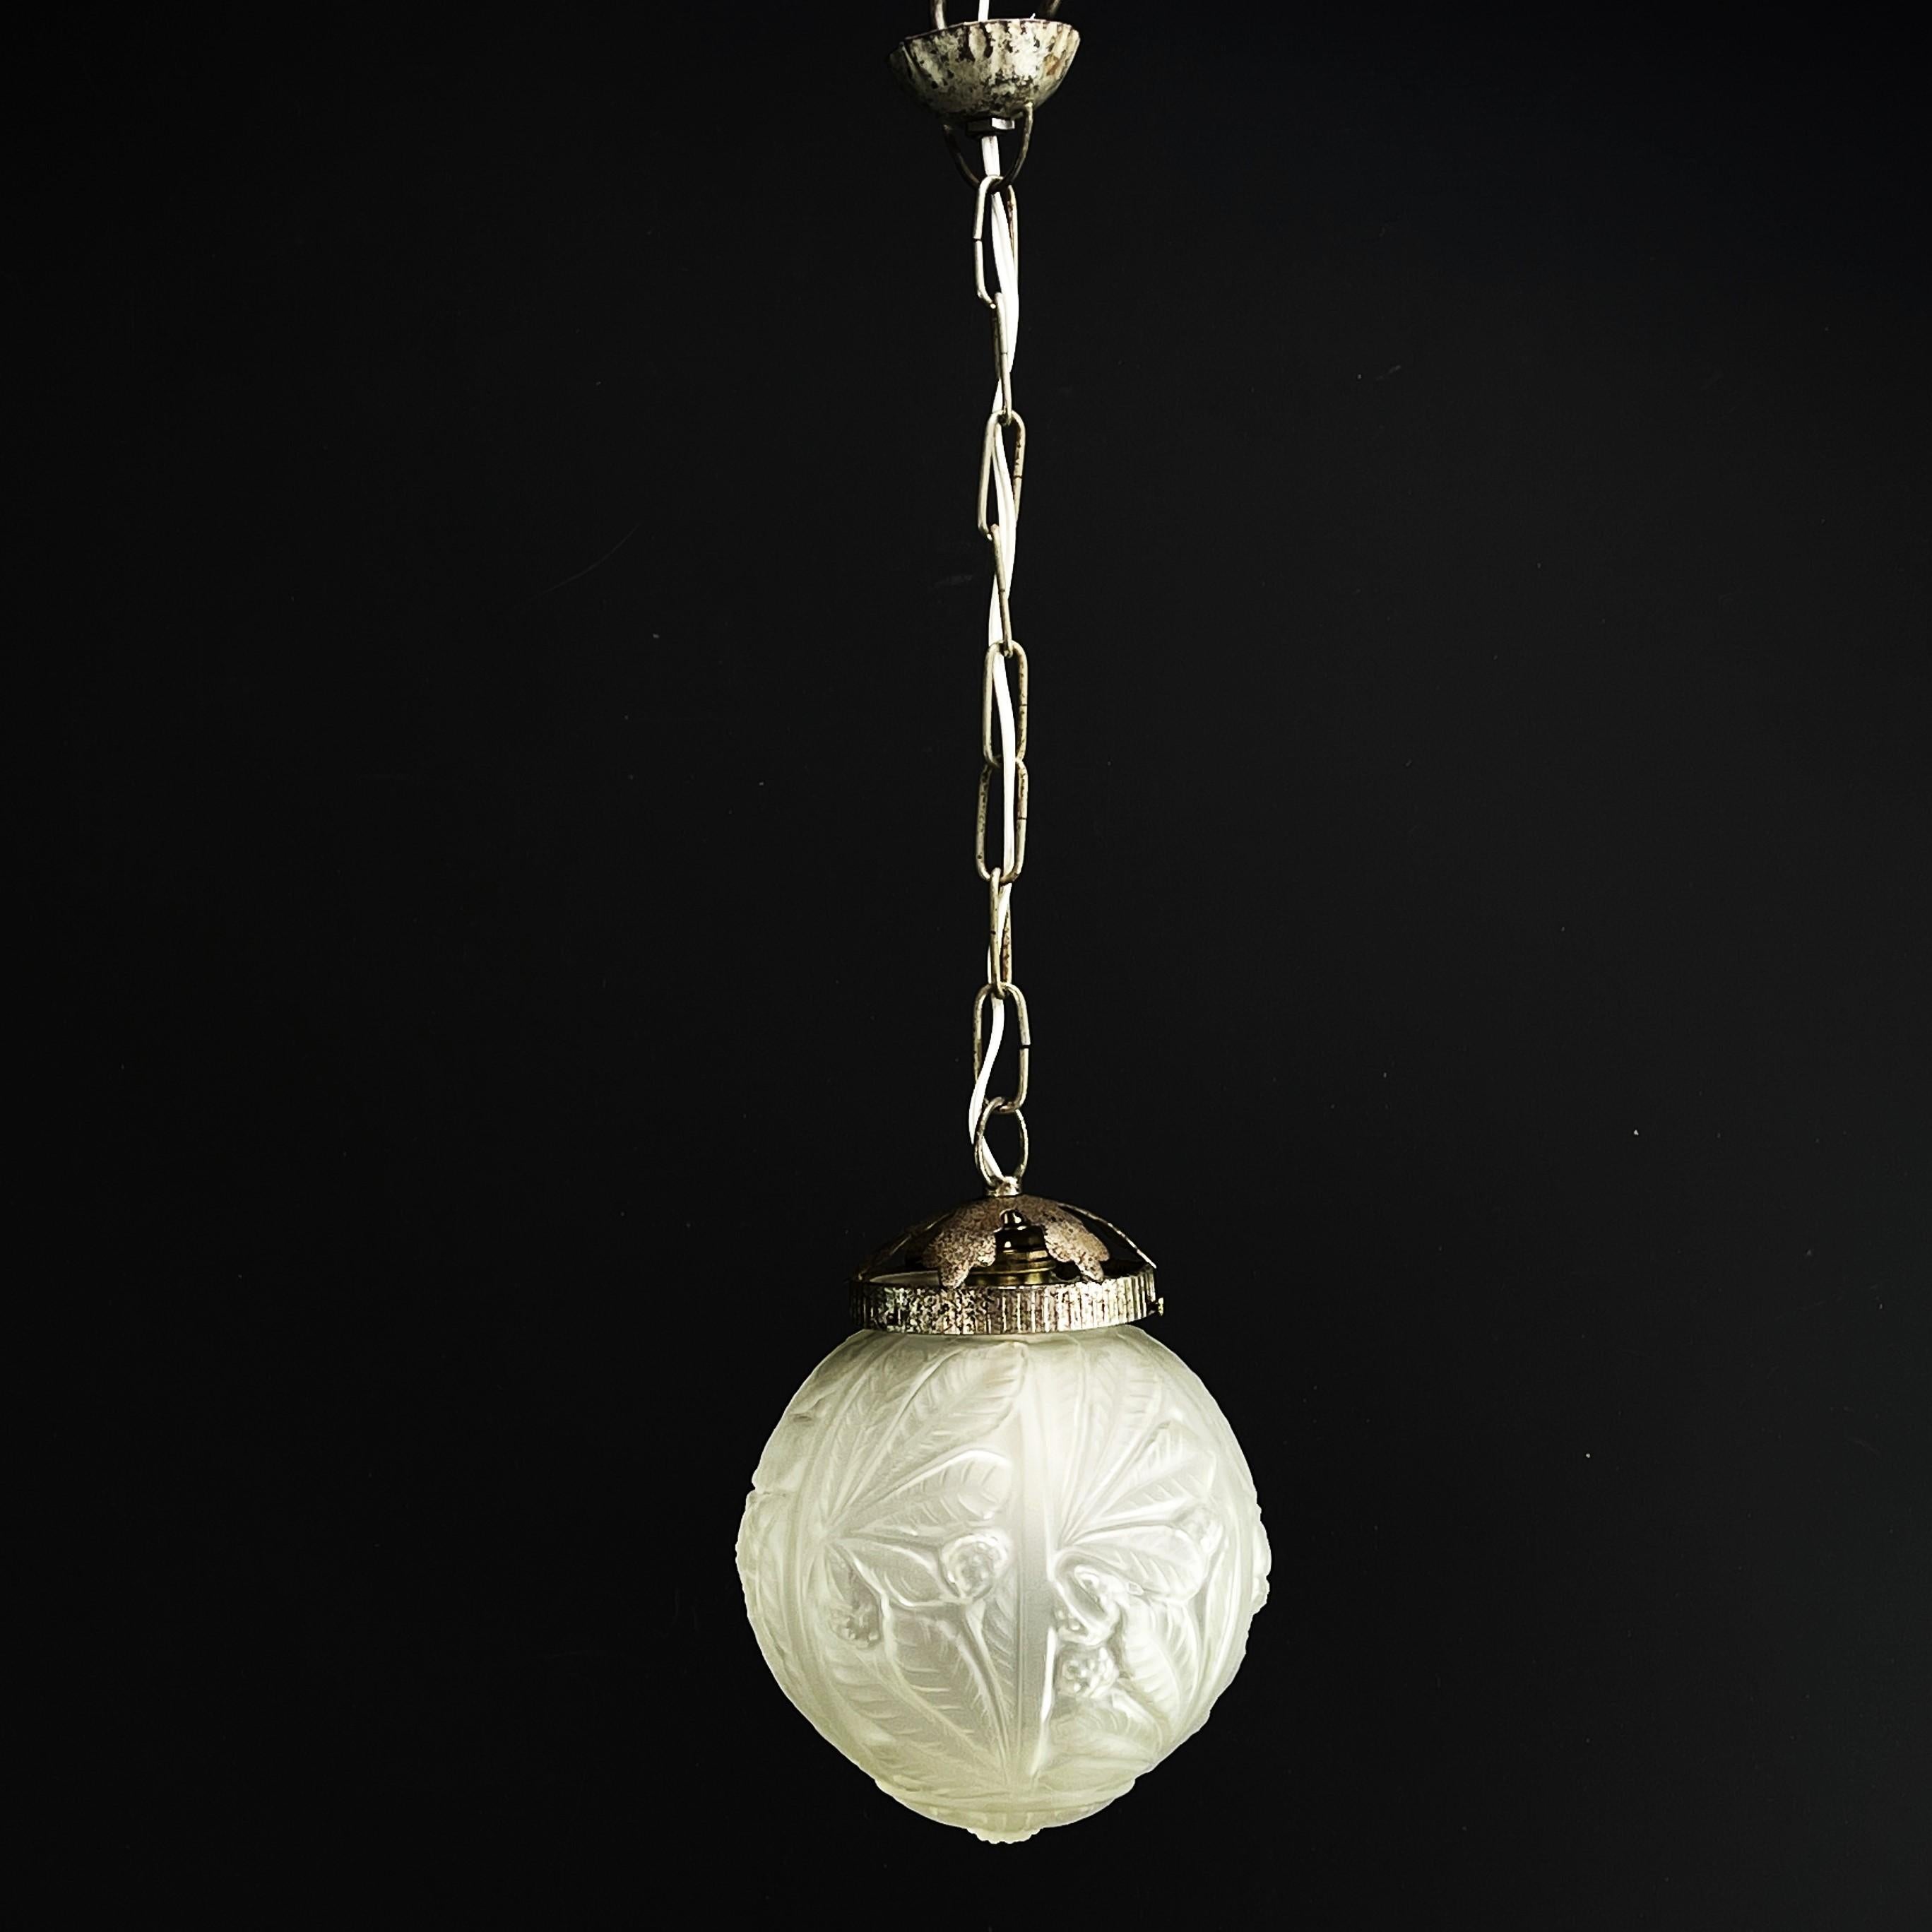 Art-Deco-Lüstre Ball lamp luminaire - 1930er Jahre

Diese Art-Déco-Kugellampe aus den 1930er Jahren ist ein herausragendes Beispiel für die Eleganz und Raffinesse des Art-Déco-Stils. Mit seiner Kombination aus Metall und Glas verkörpert dieser